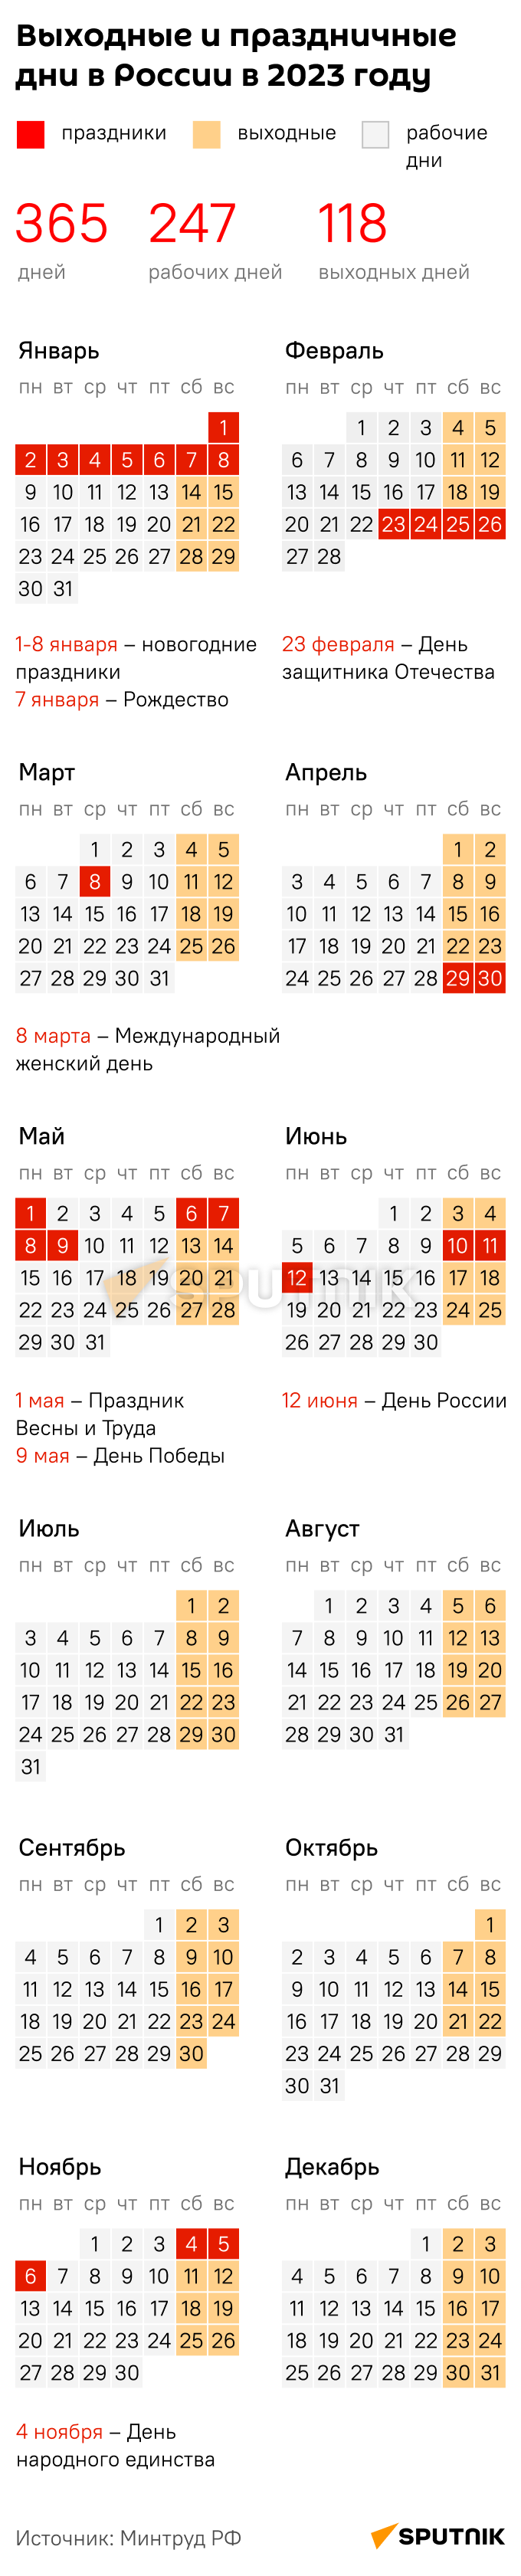 Производственный календарь 2023 год: праздники в России